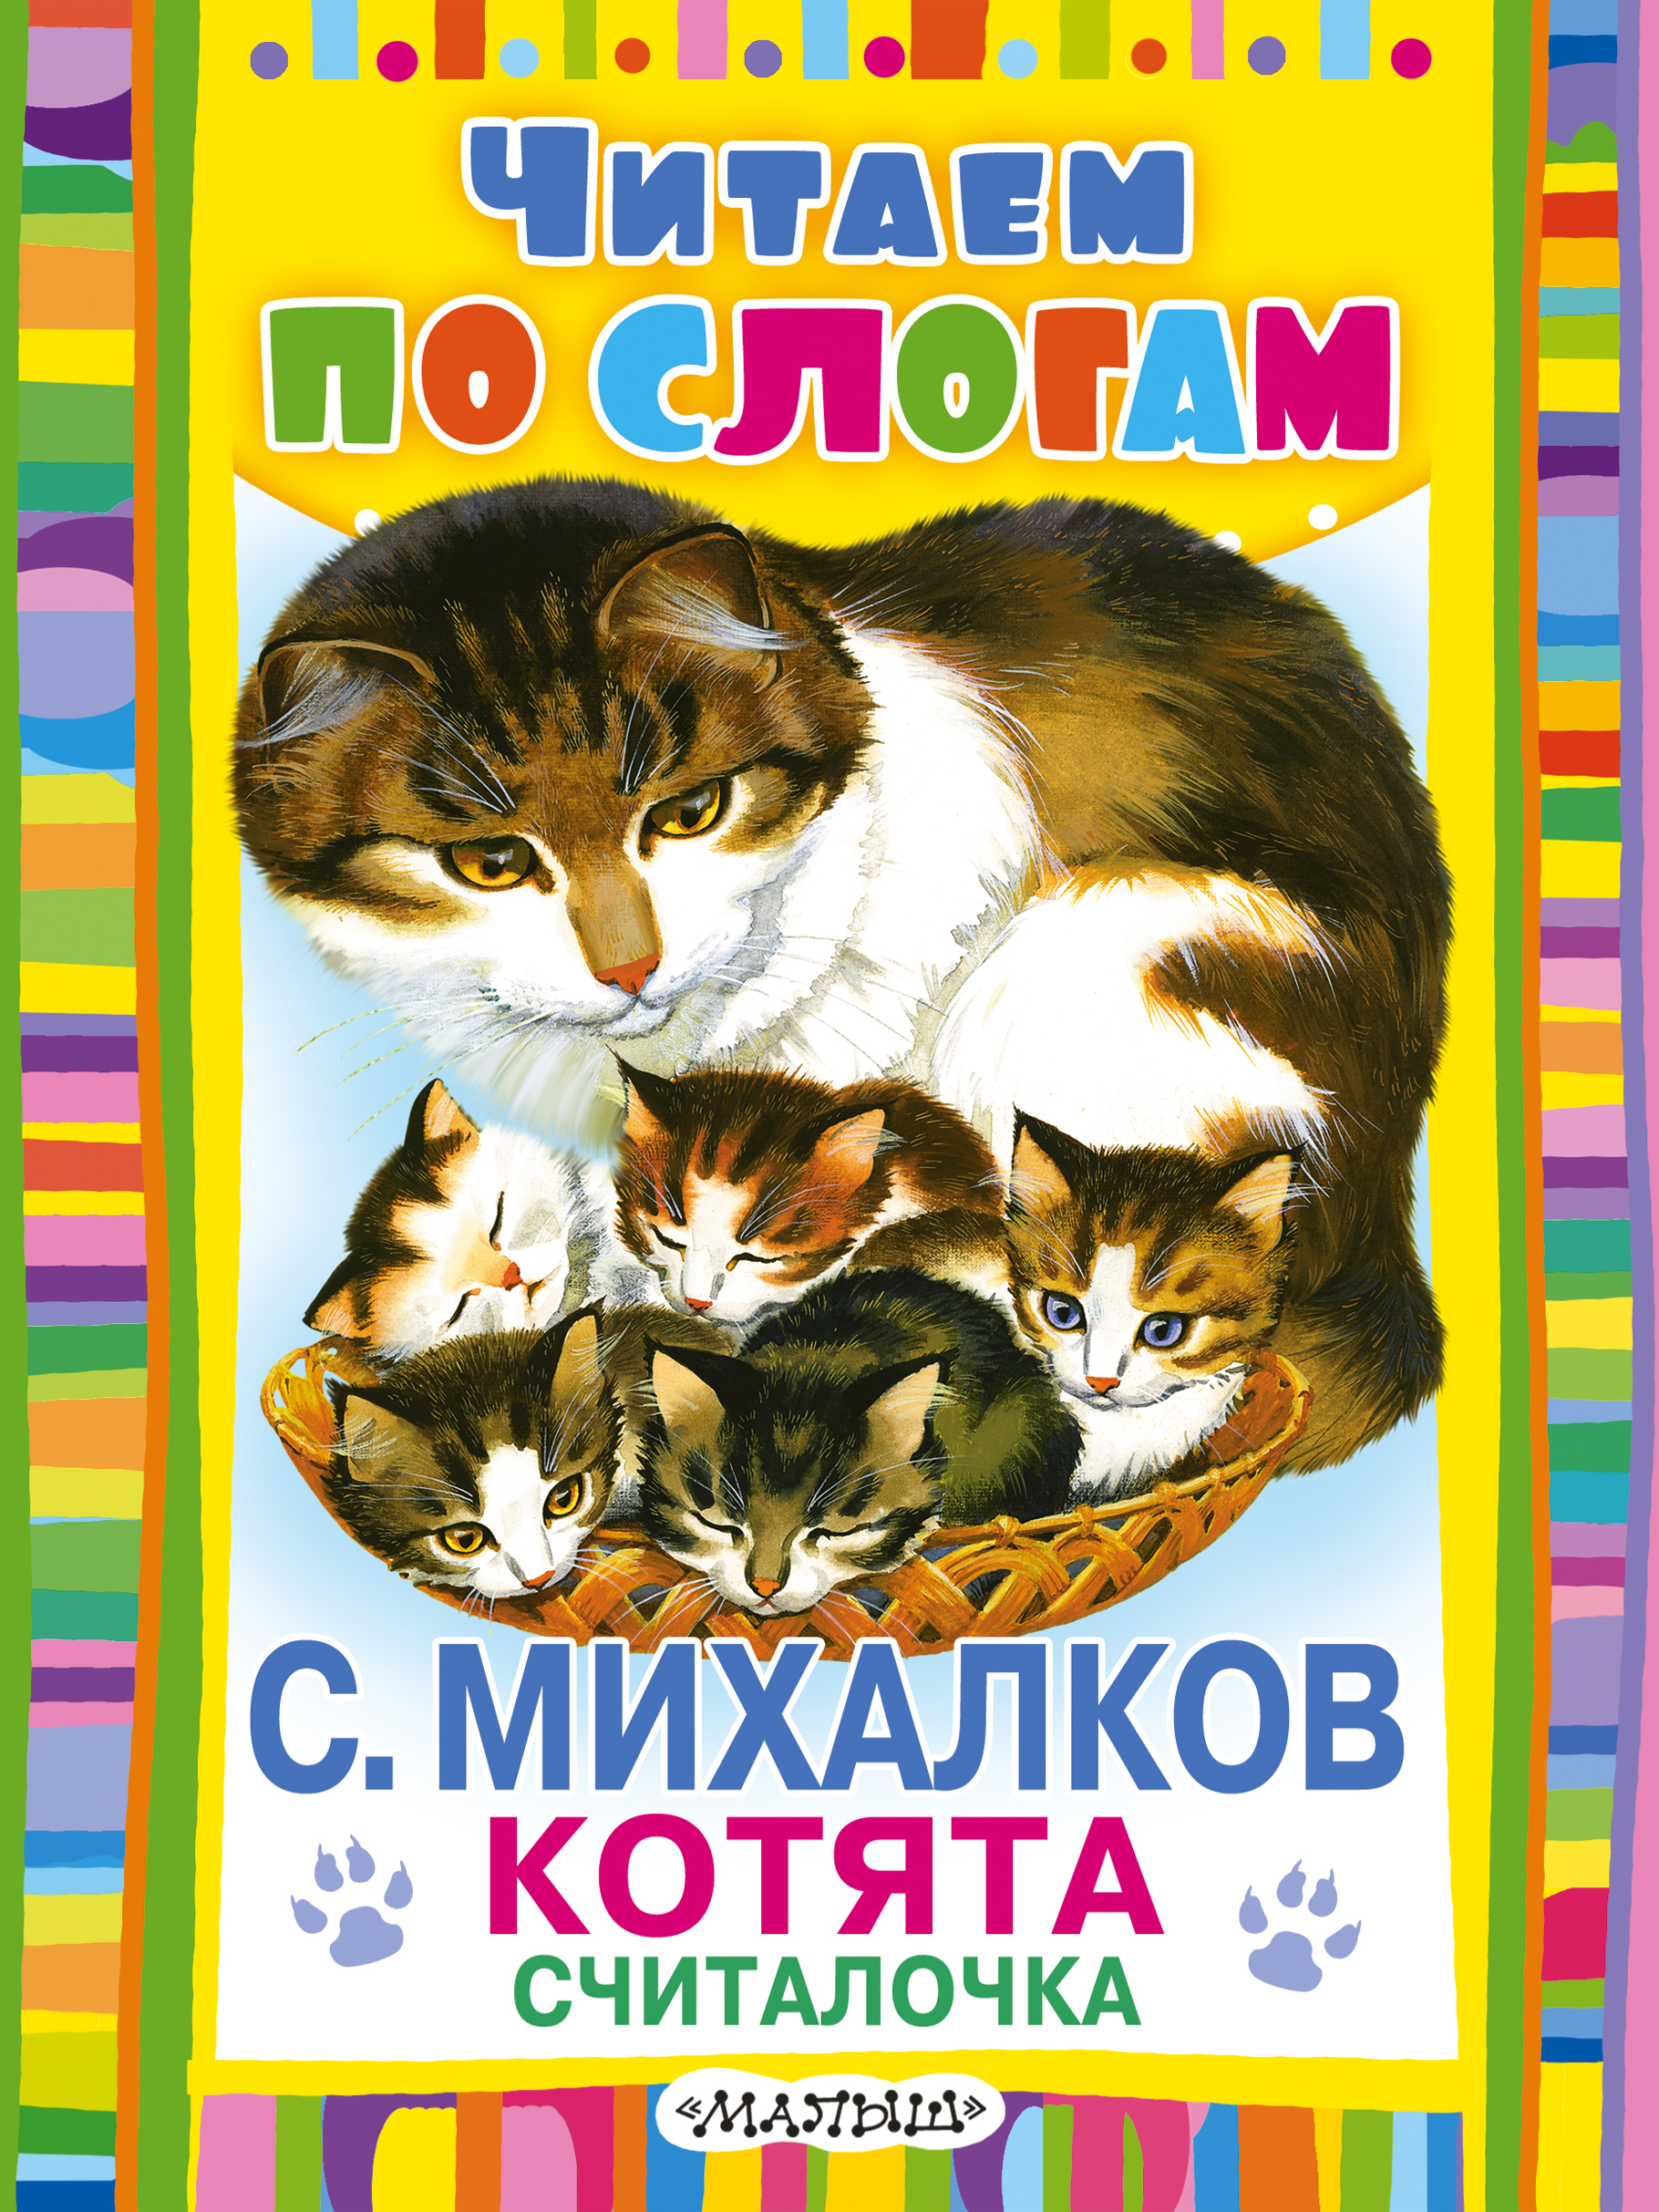 Книги про михалкова. Михалков котята книжка. Михалков считалочка котята. Михалков считалочка котята книга.